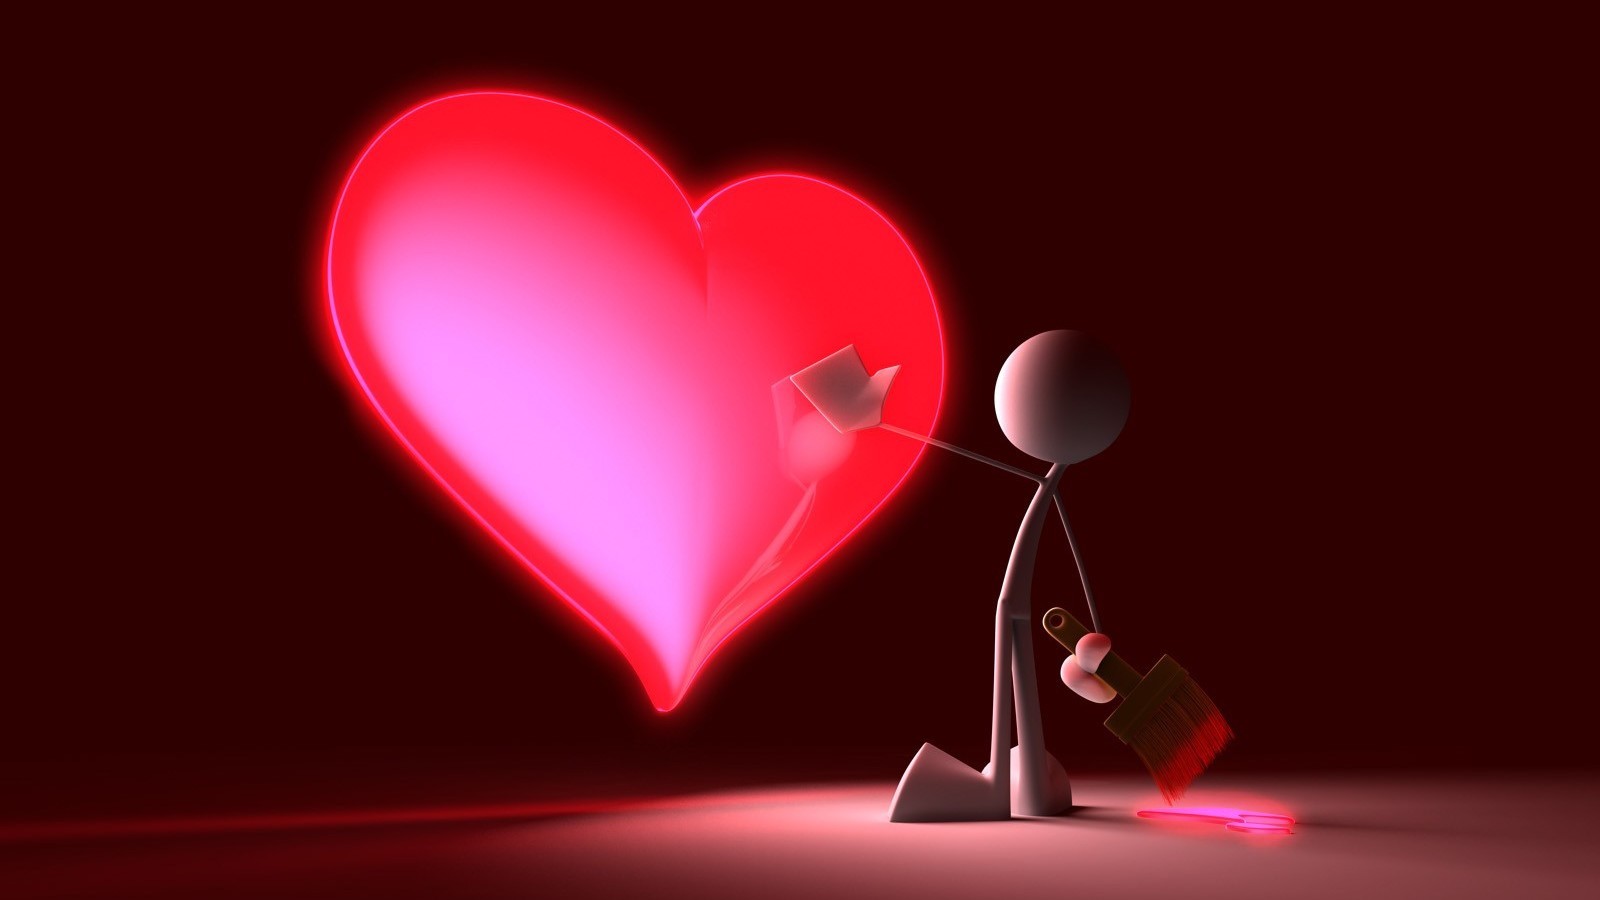 粉红色的心形设计在背景虚化背景显示爱情和浪漫情怀背景素材免费下载(图片编号:3493872)-六图网